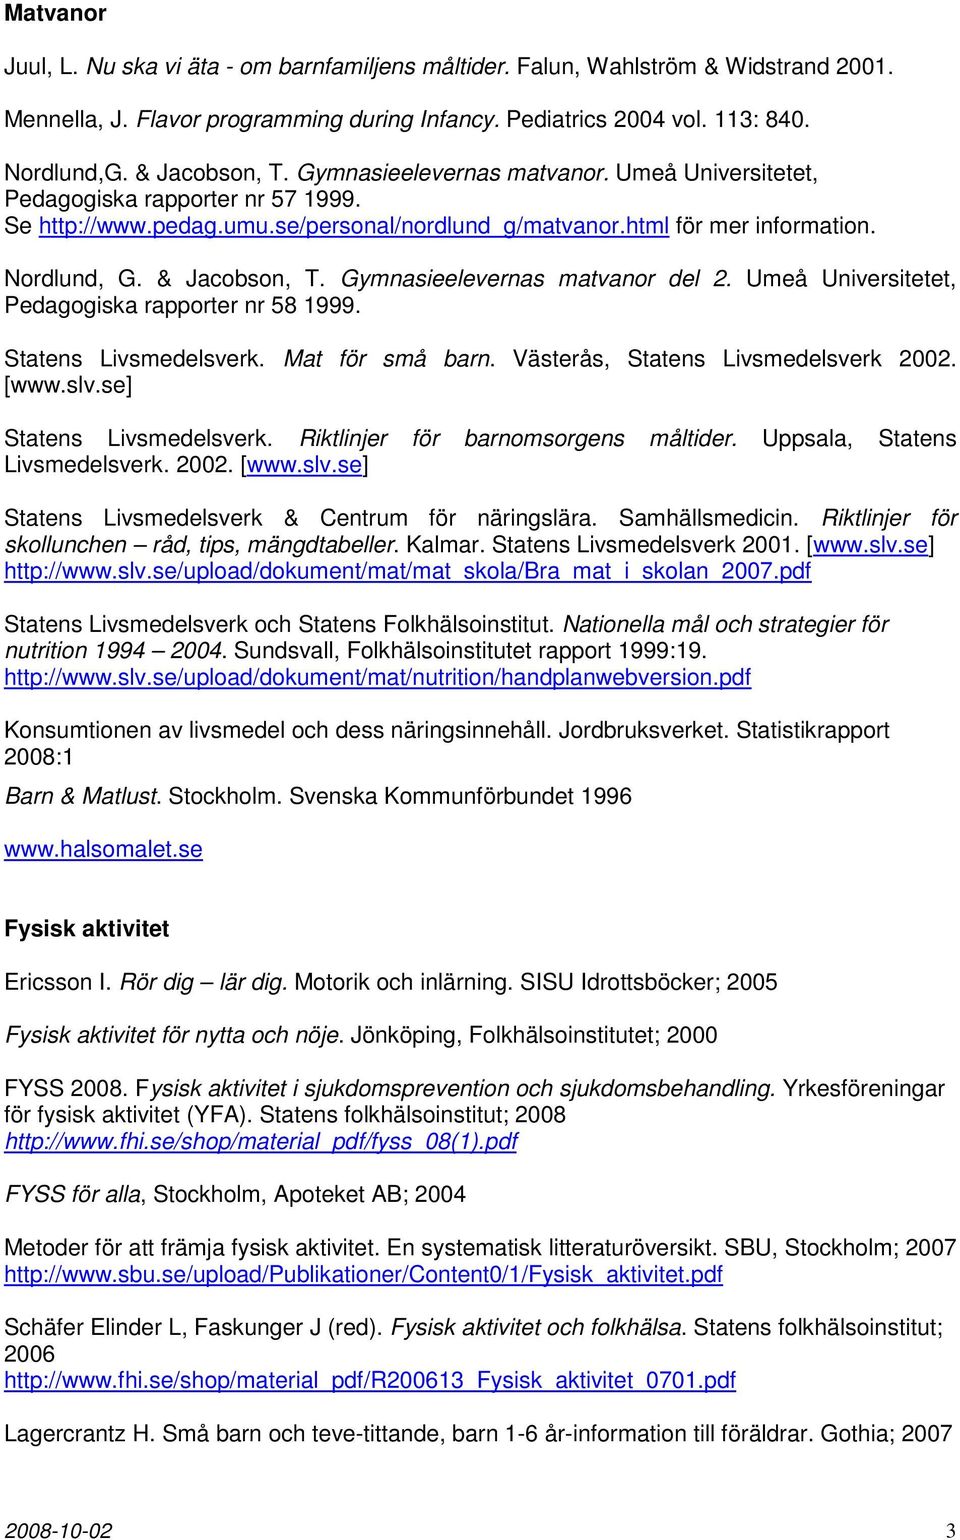 & Jacobson, T. Gymnasieelevernas matvanor del 2. Umeå Universitetet, Pedagogiska rapporter nr 58 1999. Statens Livsmedelsverk. Mat för små barn. Västerås, Statens Livsmedelsverk 2002. [www.slv.